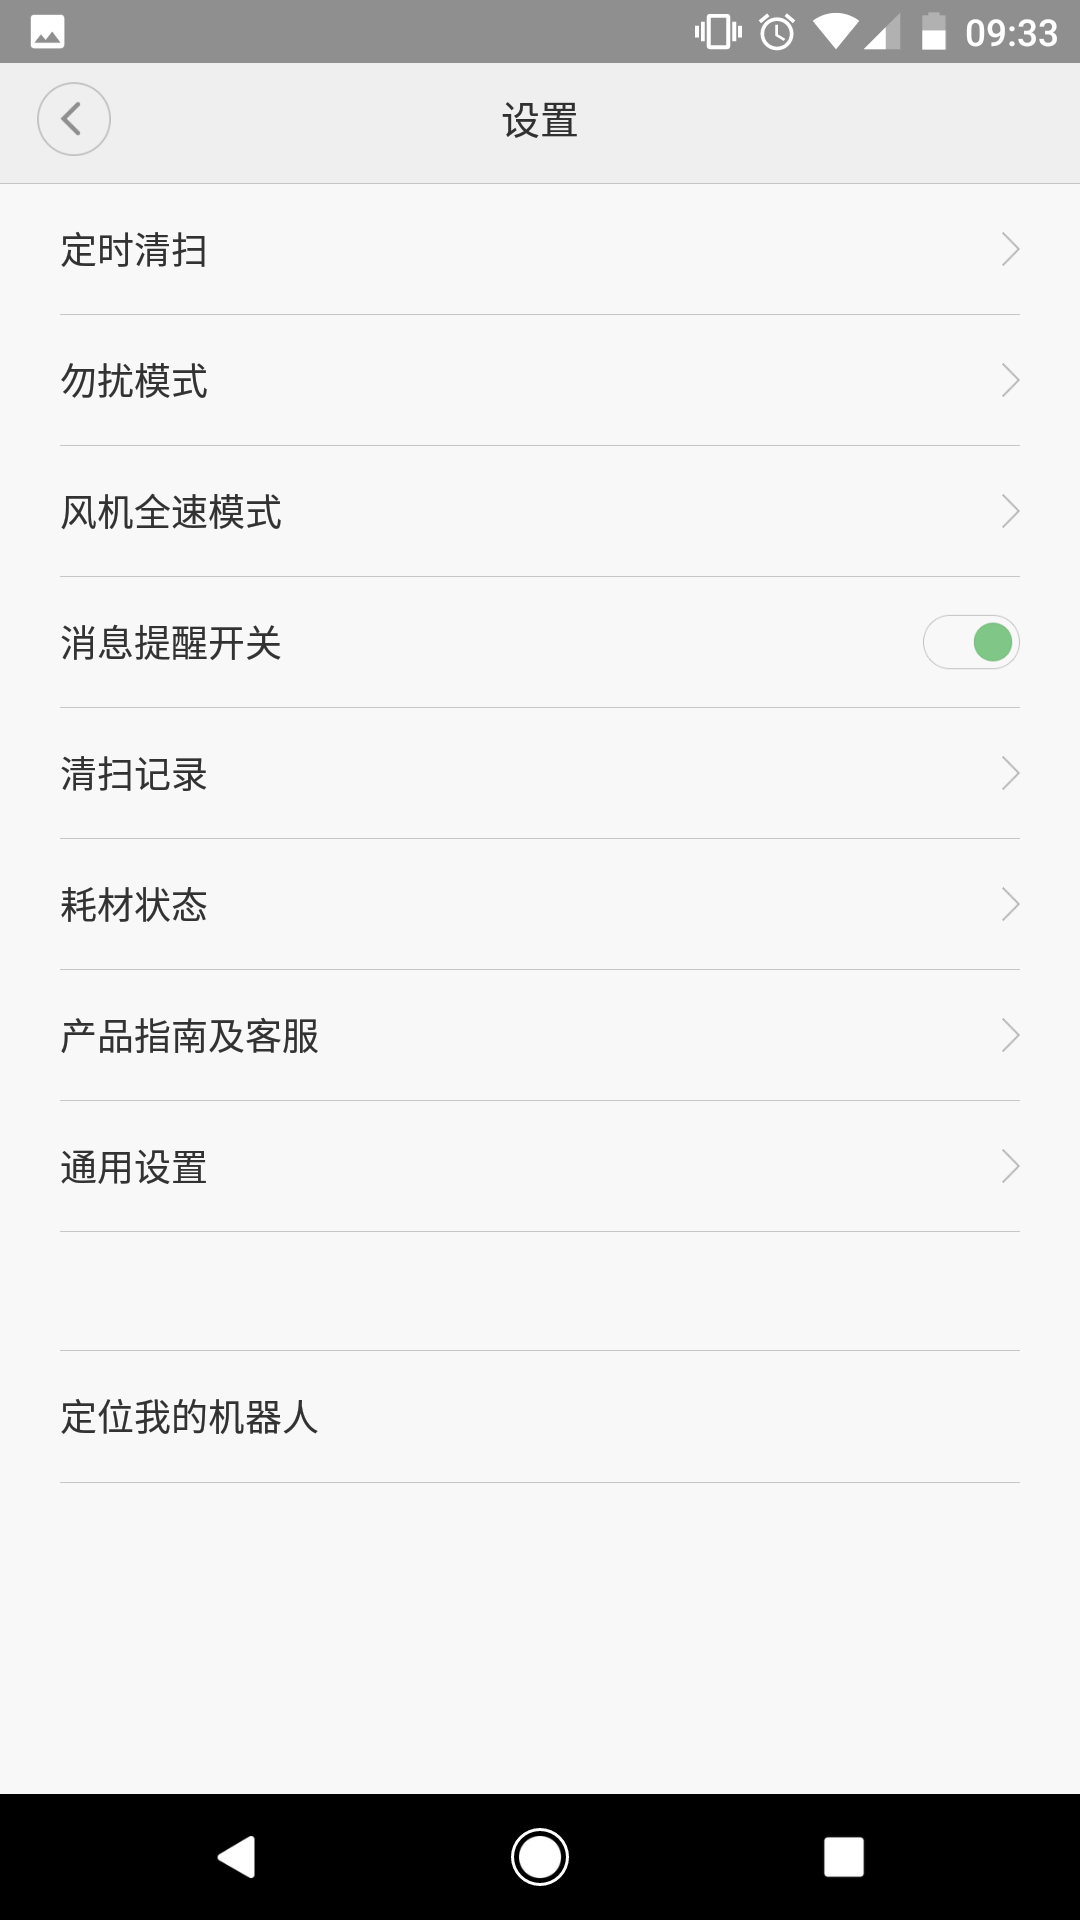 Xiaomi Mi Robot Vacuum im Test